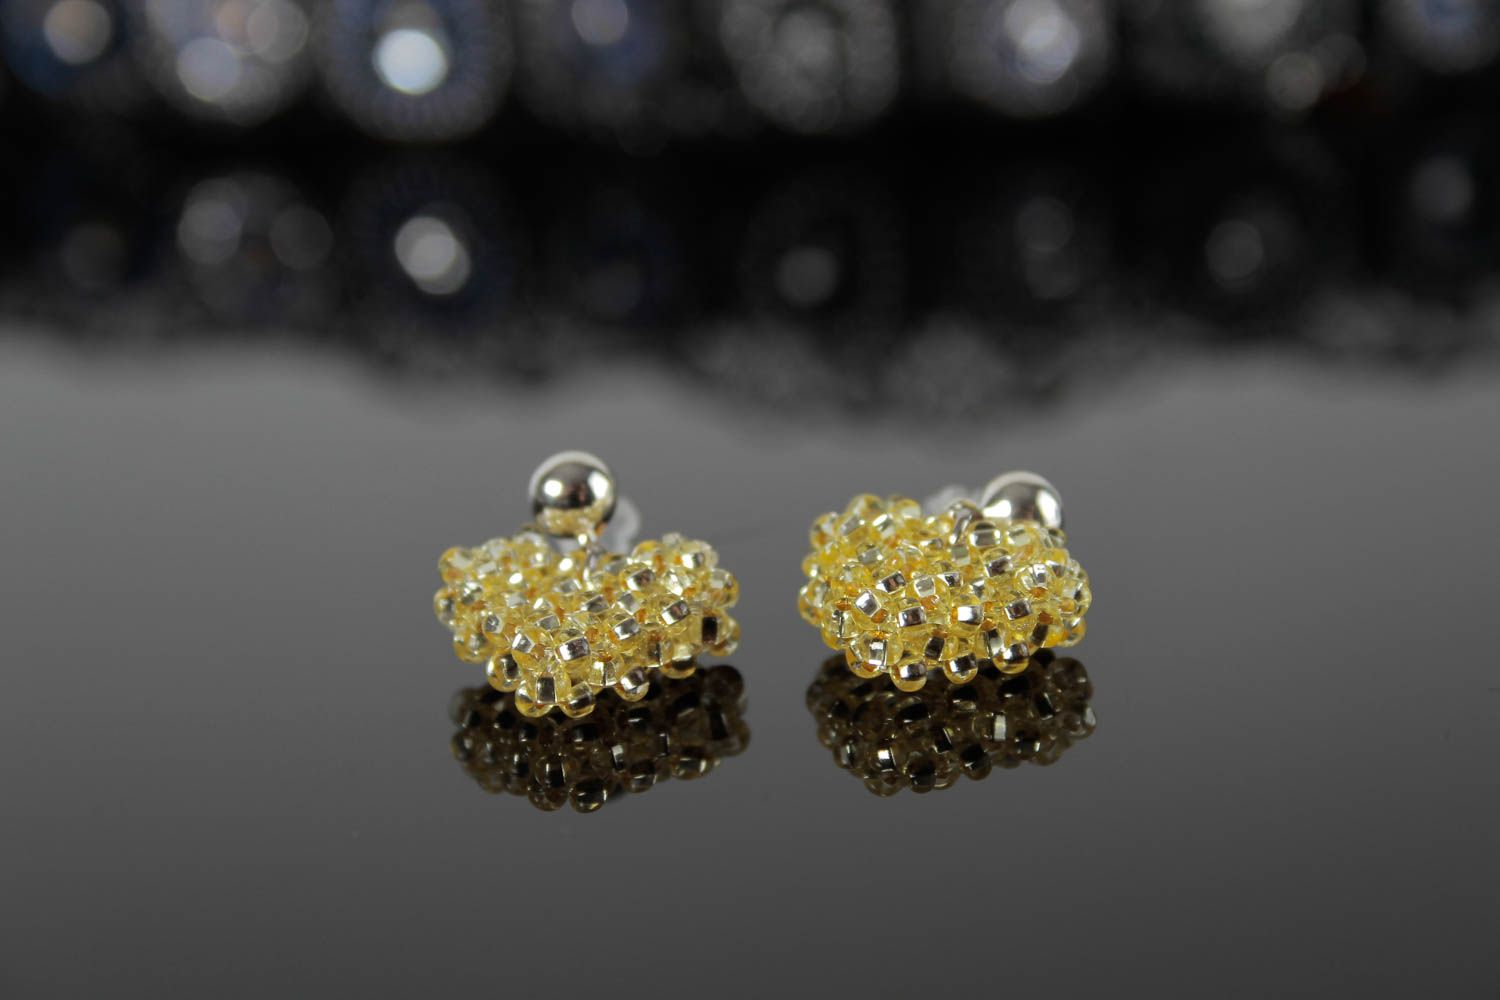 Handmade earrings beads jewelry accessory for women littl earrings best gift photo 2